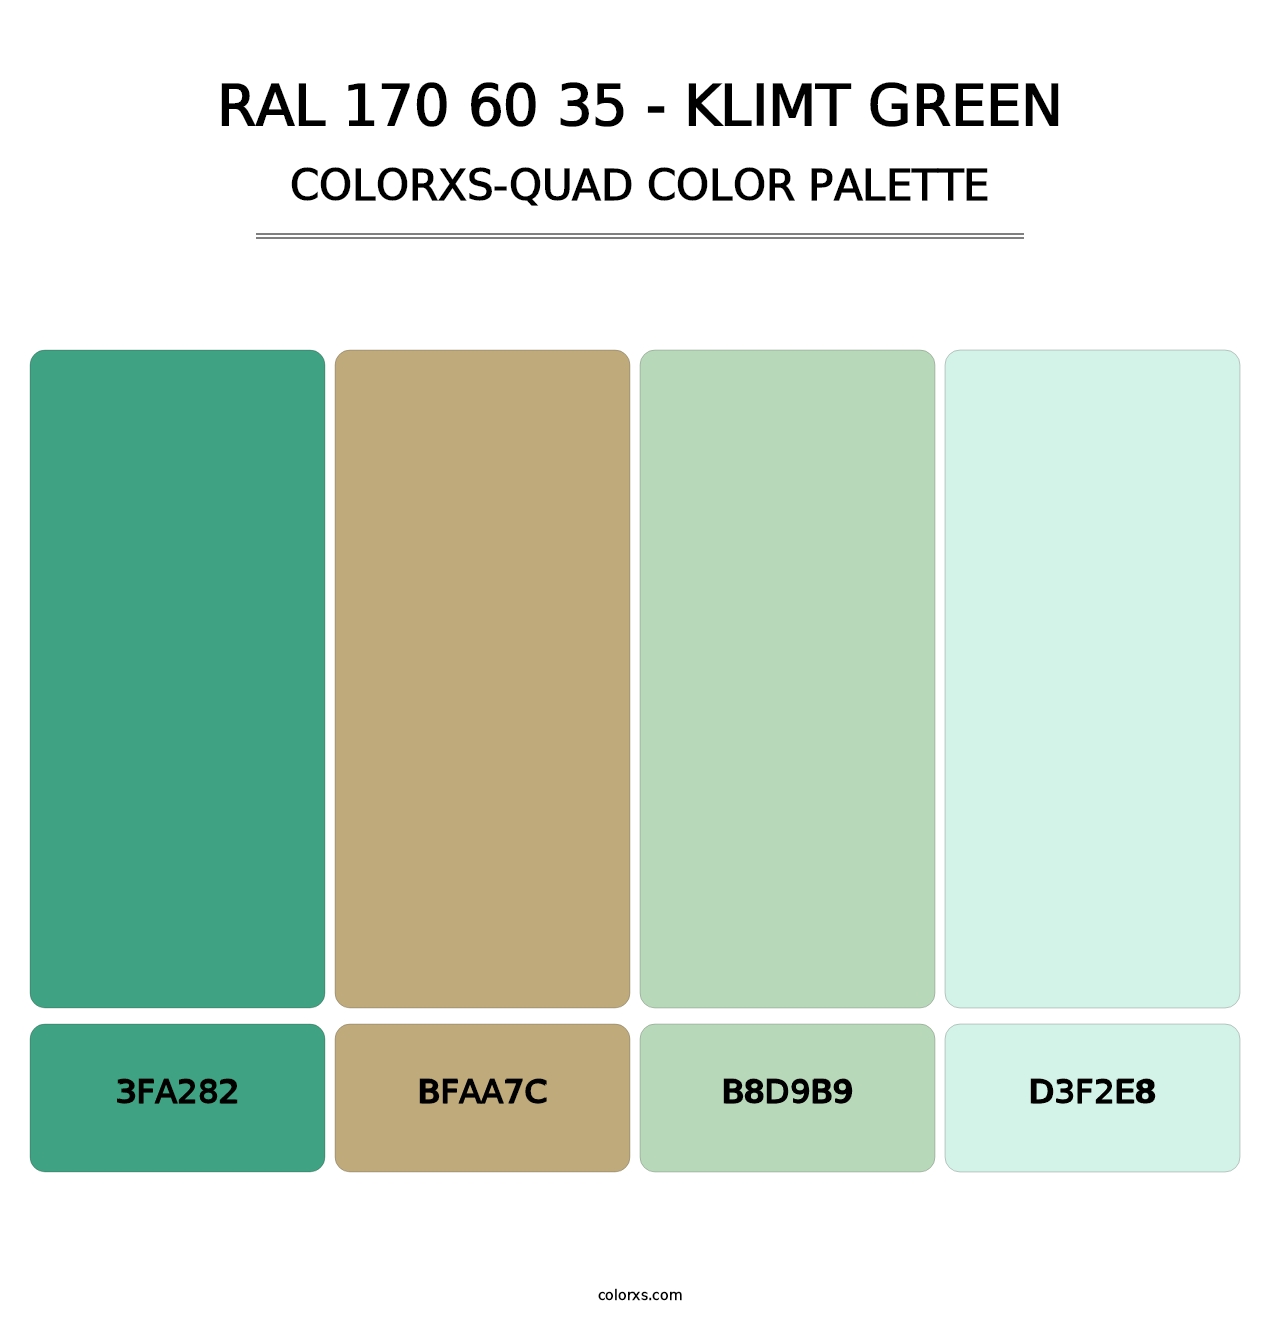 RAL 170 60 35 - Klimt Green - Colorxs Quad Palette